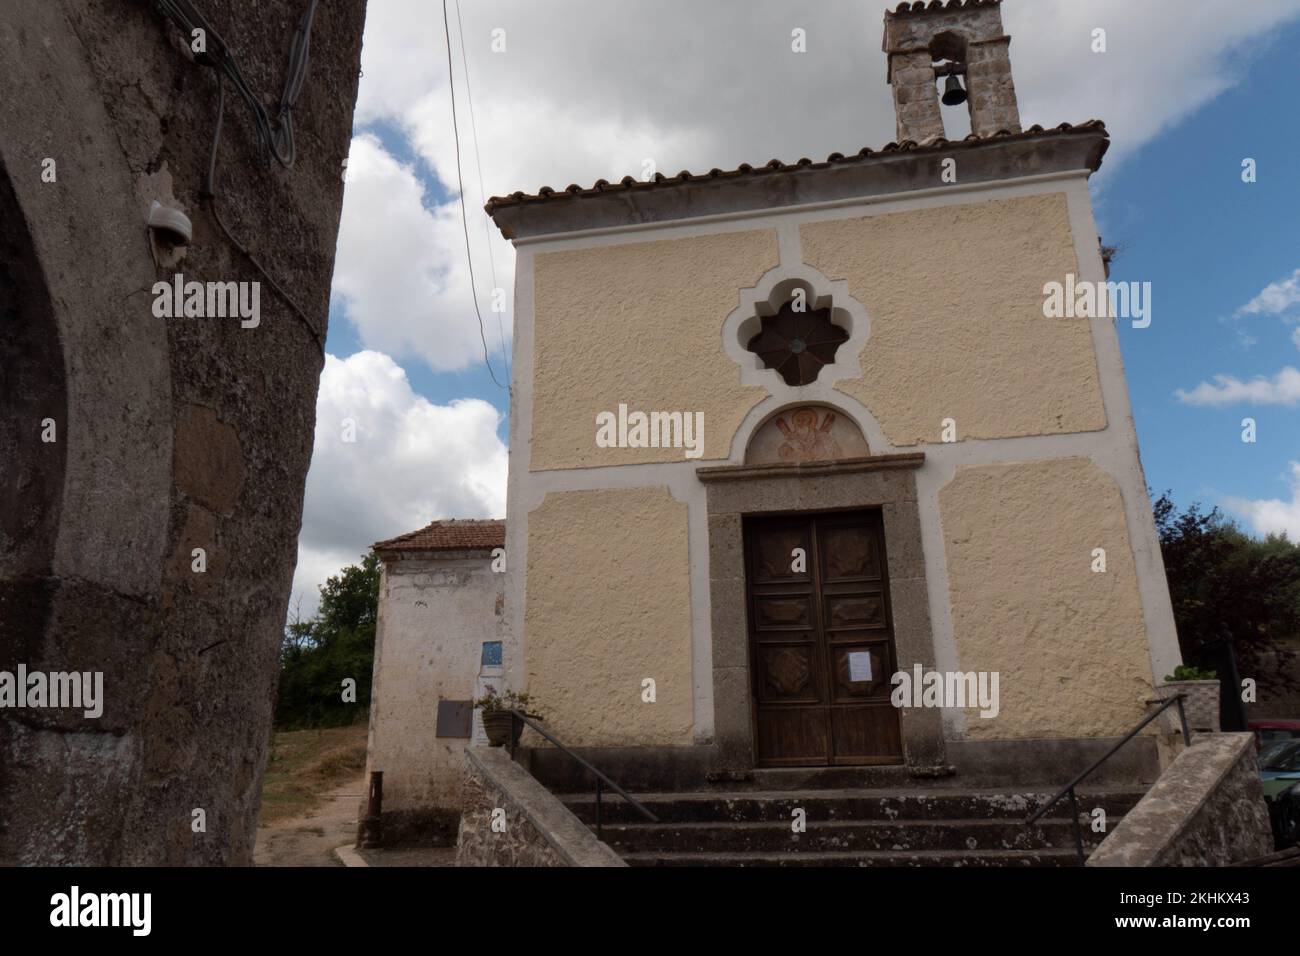 Pietravairano, ein mittelalterliches Dorf in der Provinz Caserta, Italien. Stockfoto